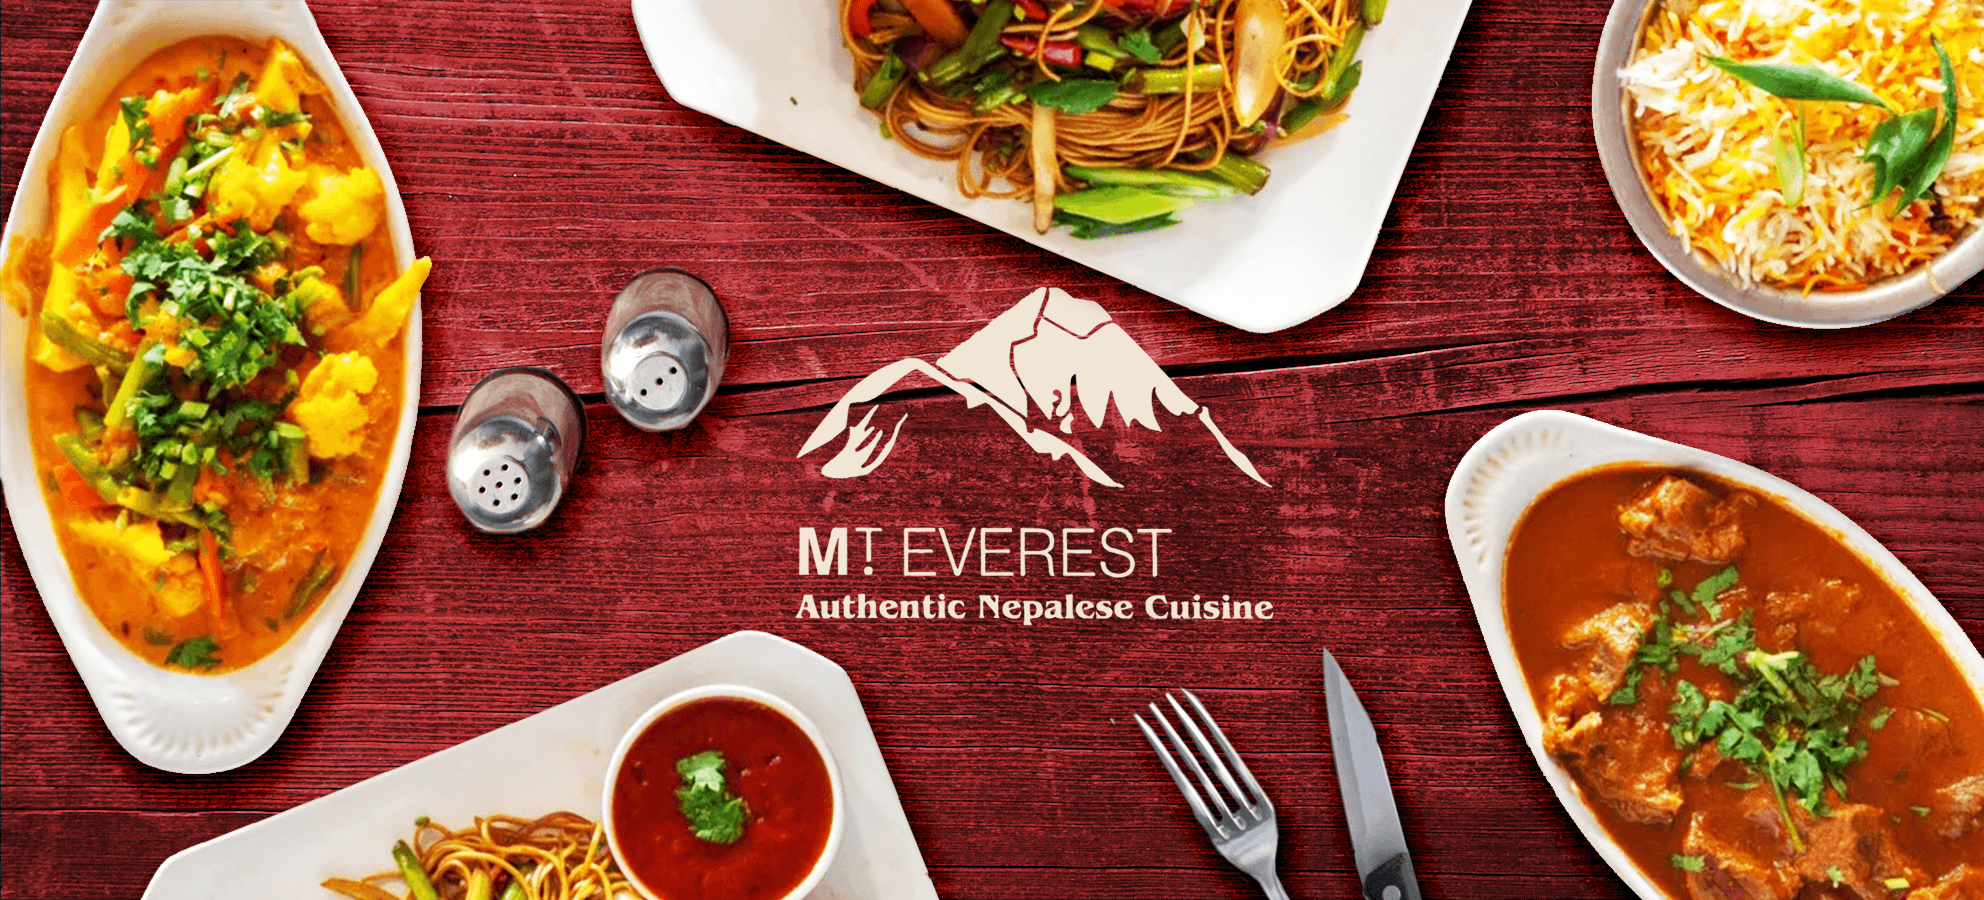 The Mount Everest Restaurant Warwickshire